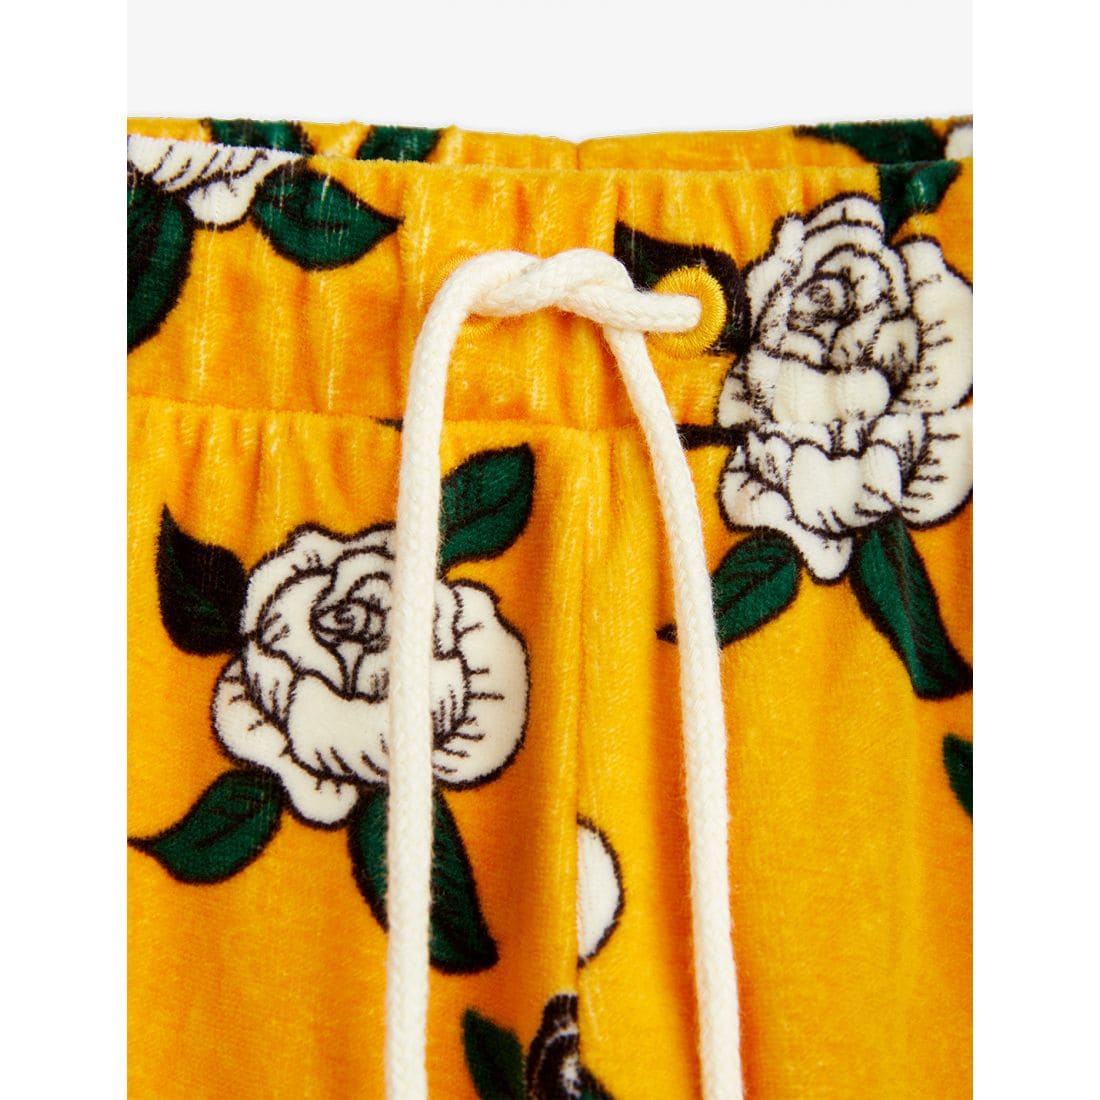 Mini Rodini Rose Velour Pants Yellow